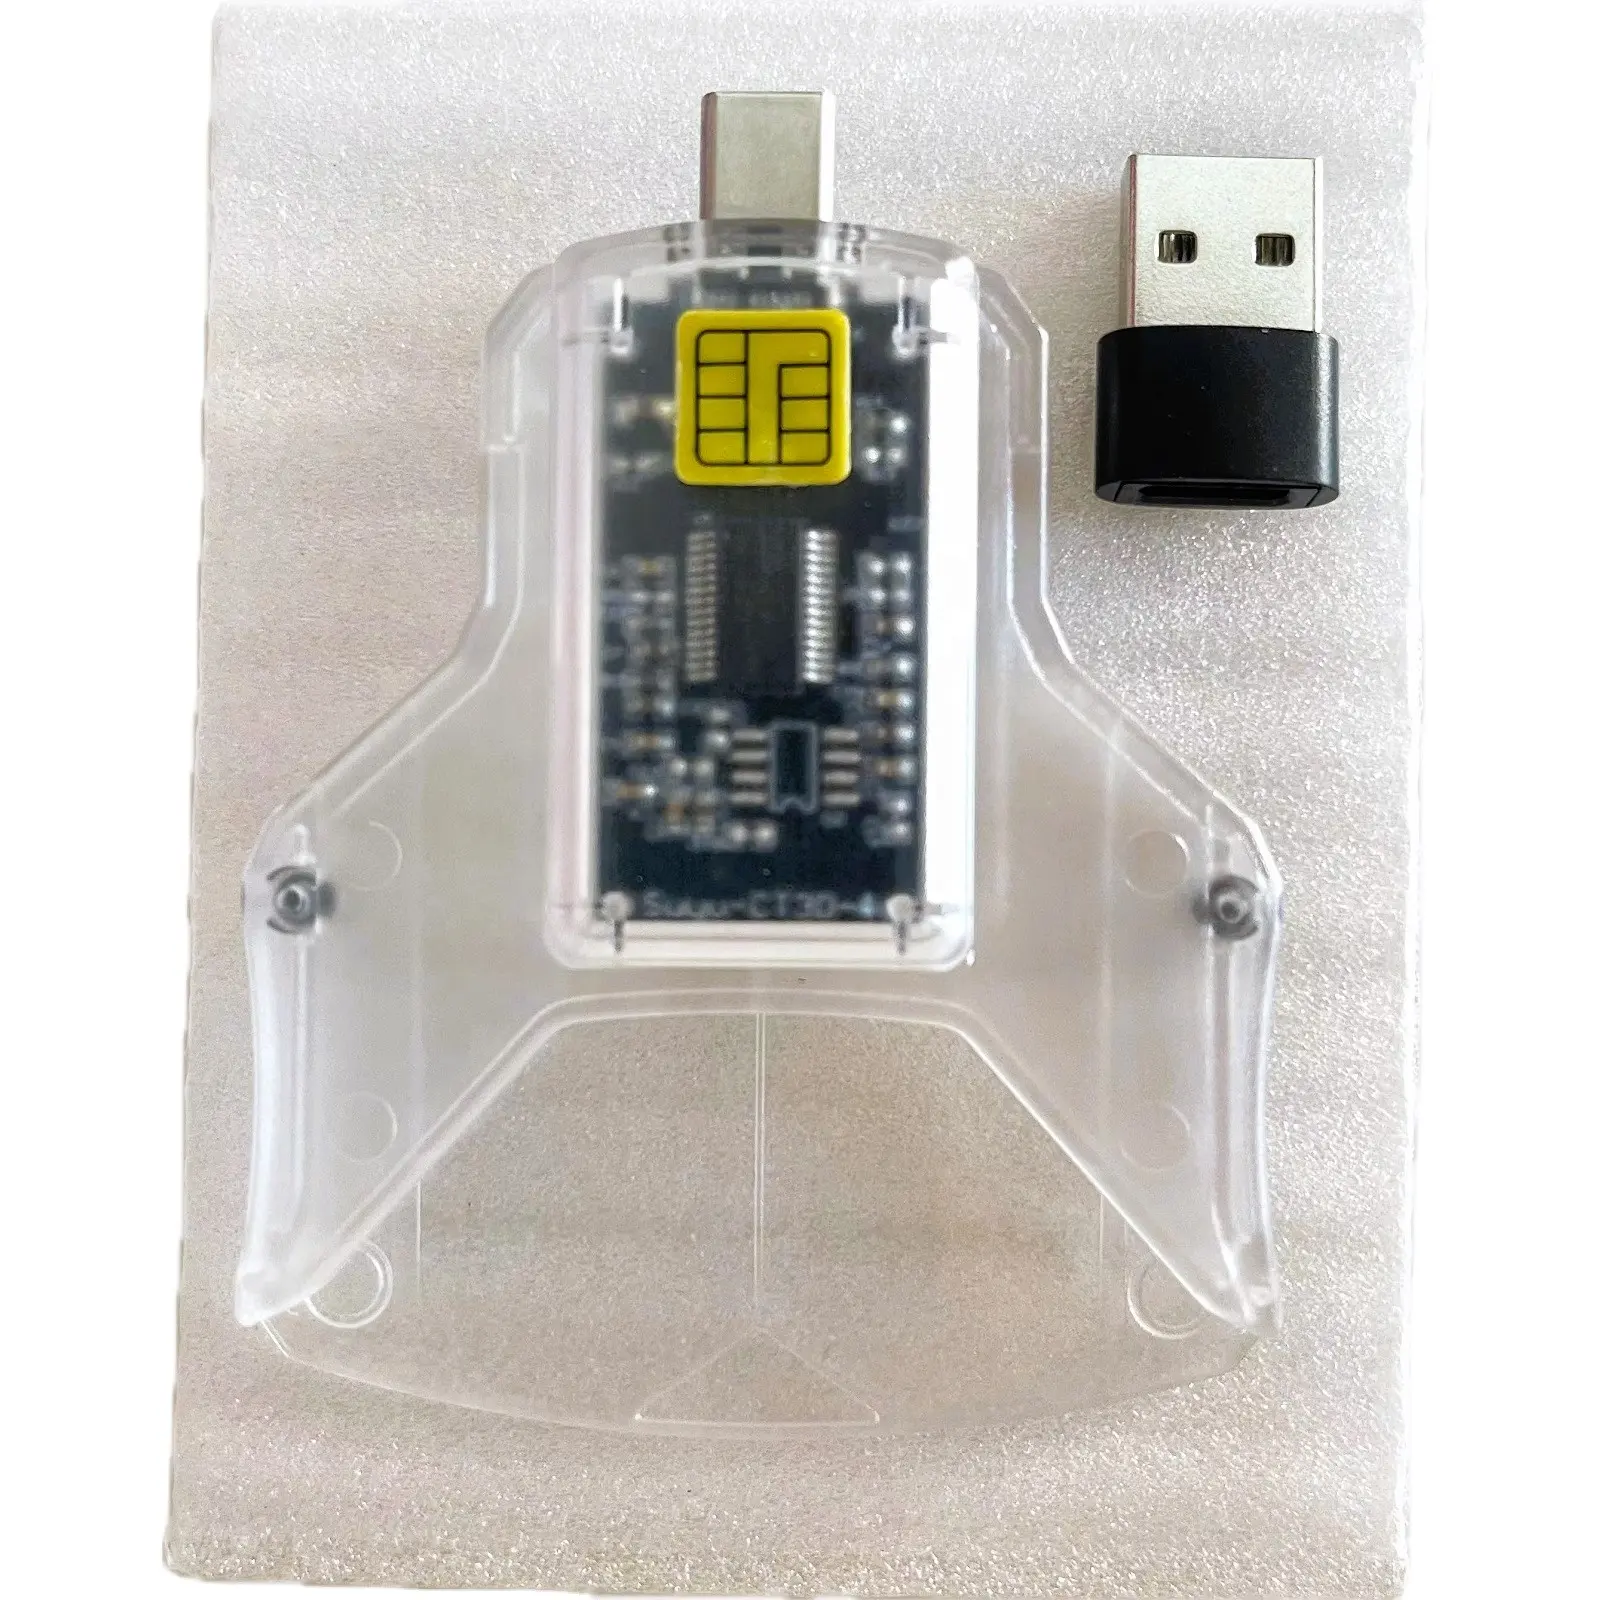 قارئ بطاقات ائتمان ذكية مع USB و الكتابة على بطاقات الصراف الآلي